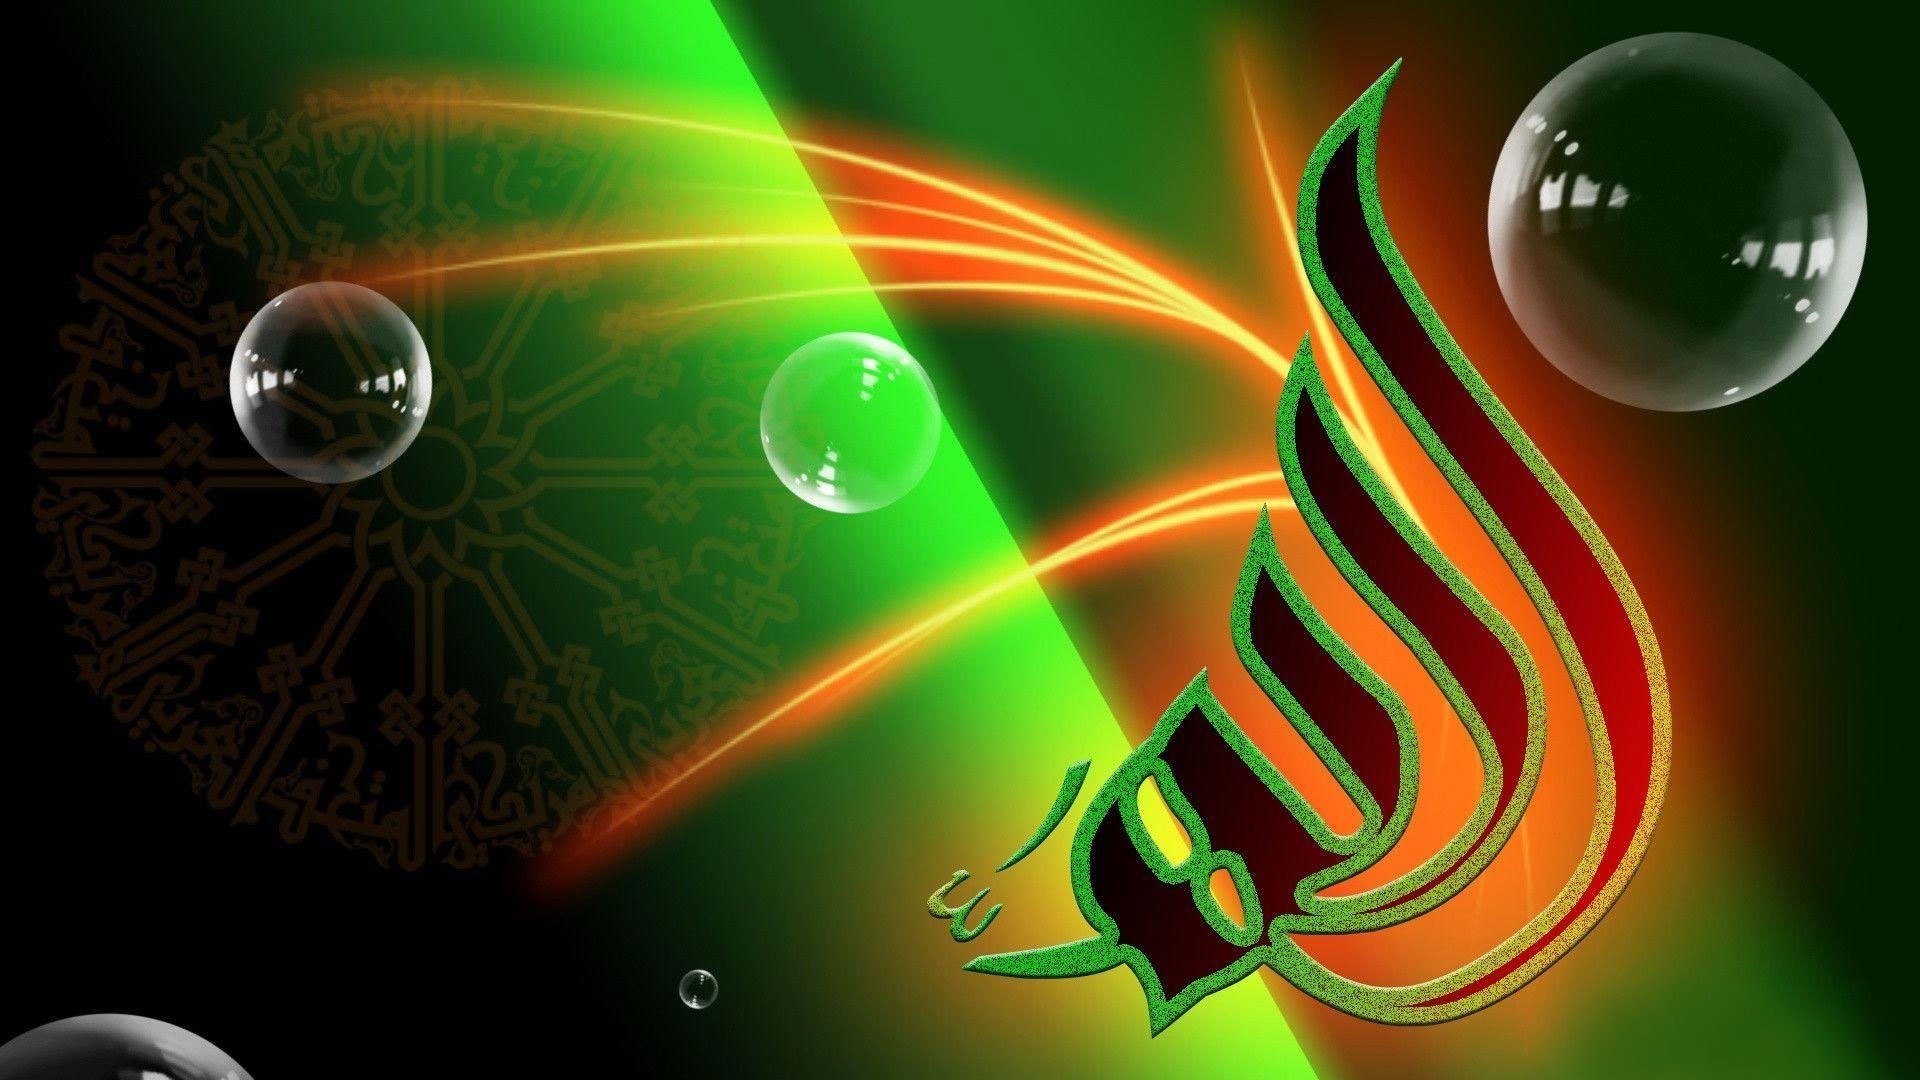 muslim wallpaper hd download,green,light,water,fractal art,design